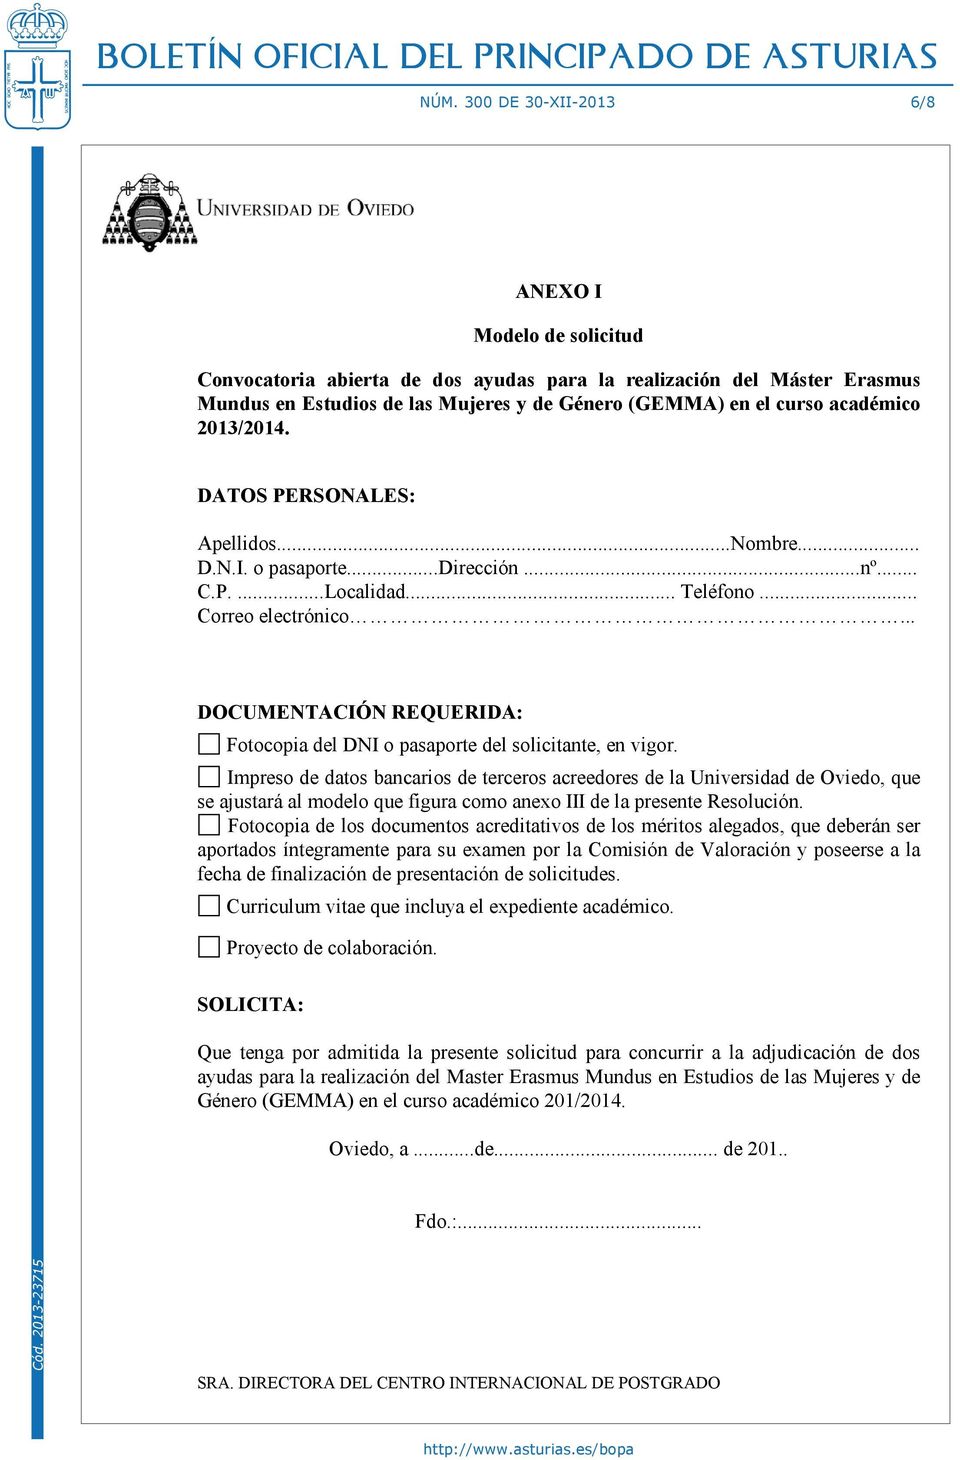 .. DOCUMENTACIÓN REQUERIDA: Fotocopia del DNI o pasaporte del solicitante, en vigor.